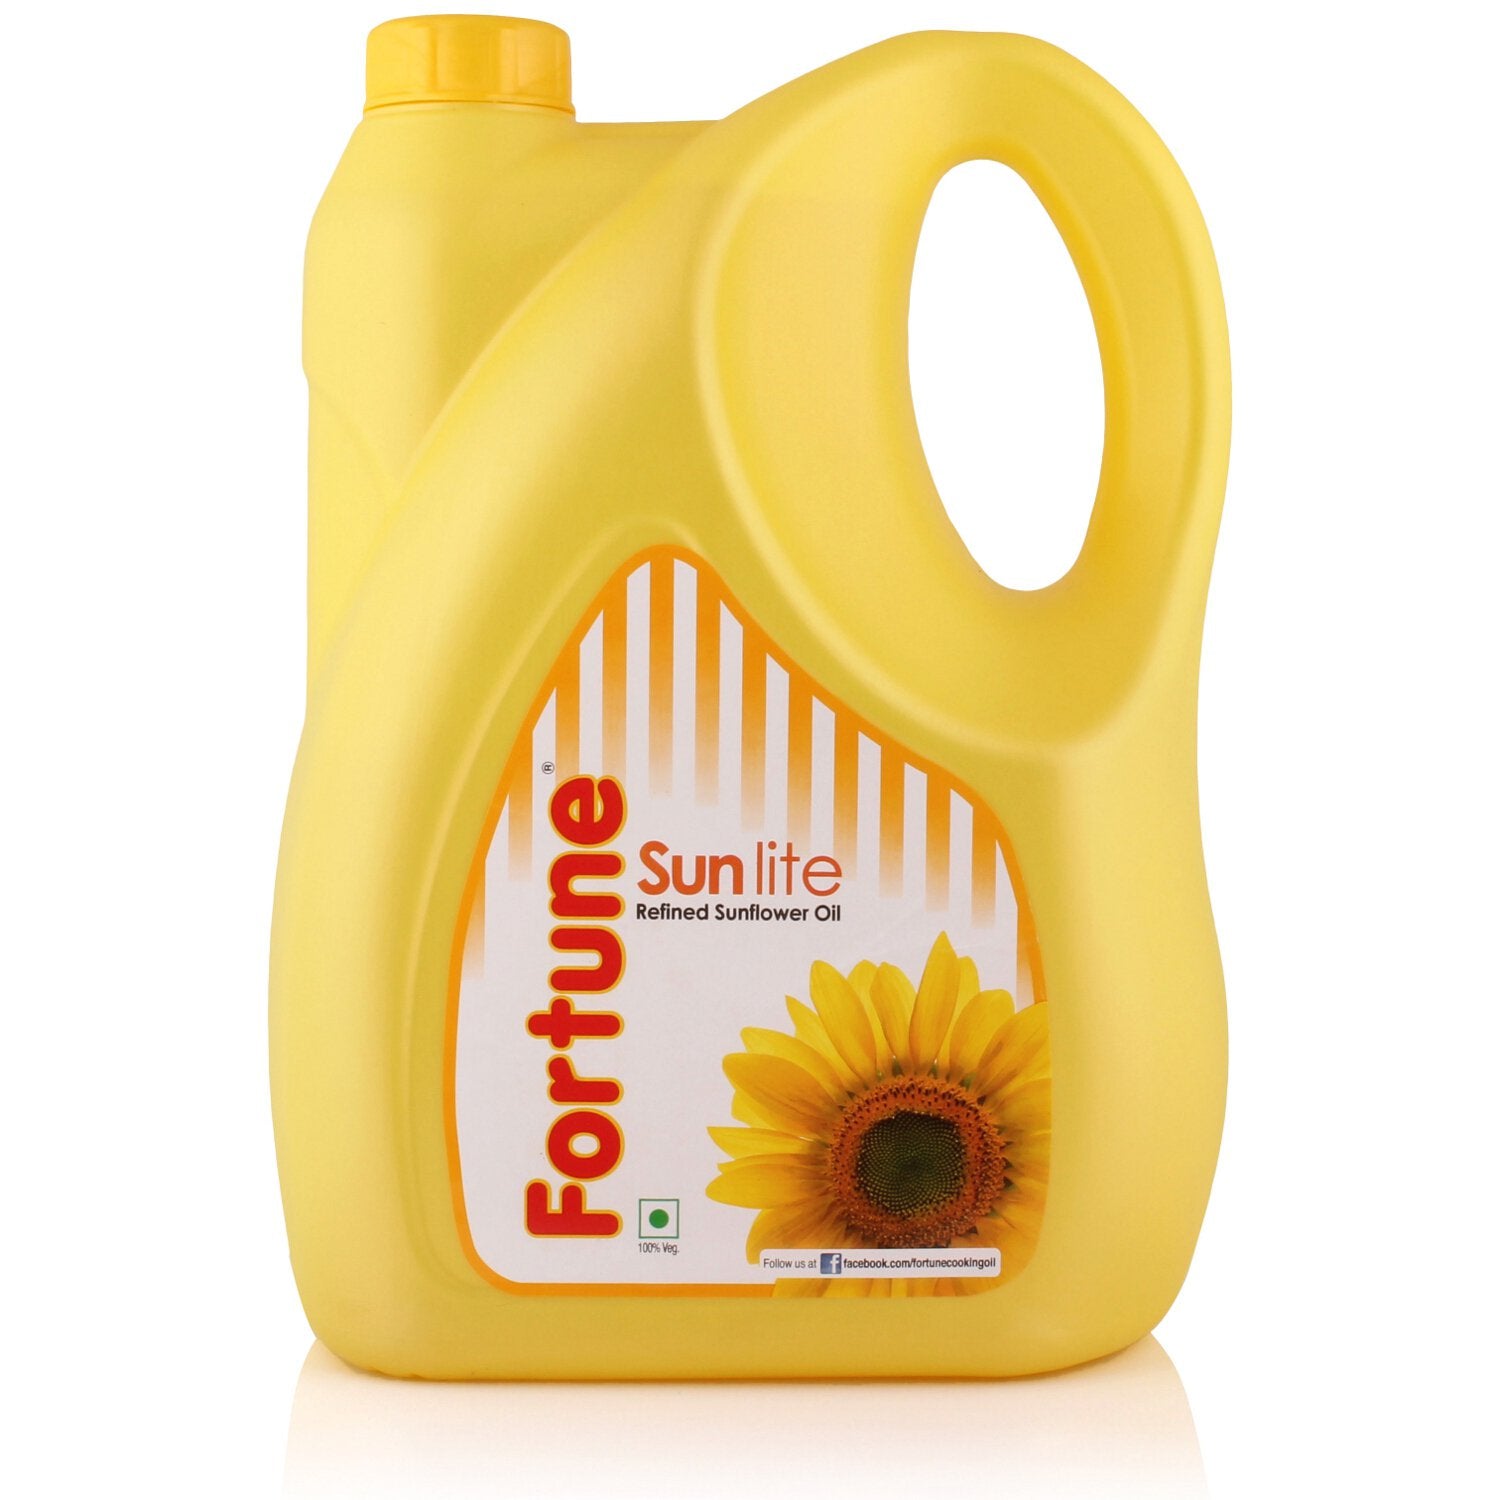 Fortune Sunflower Oil, 5 litre